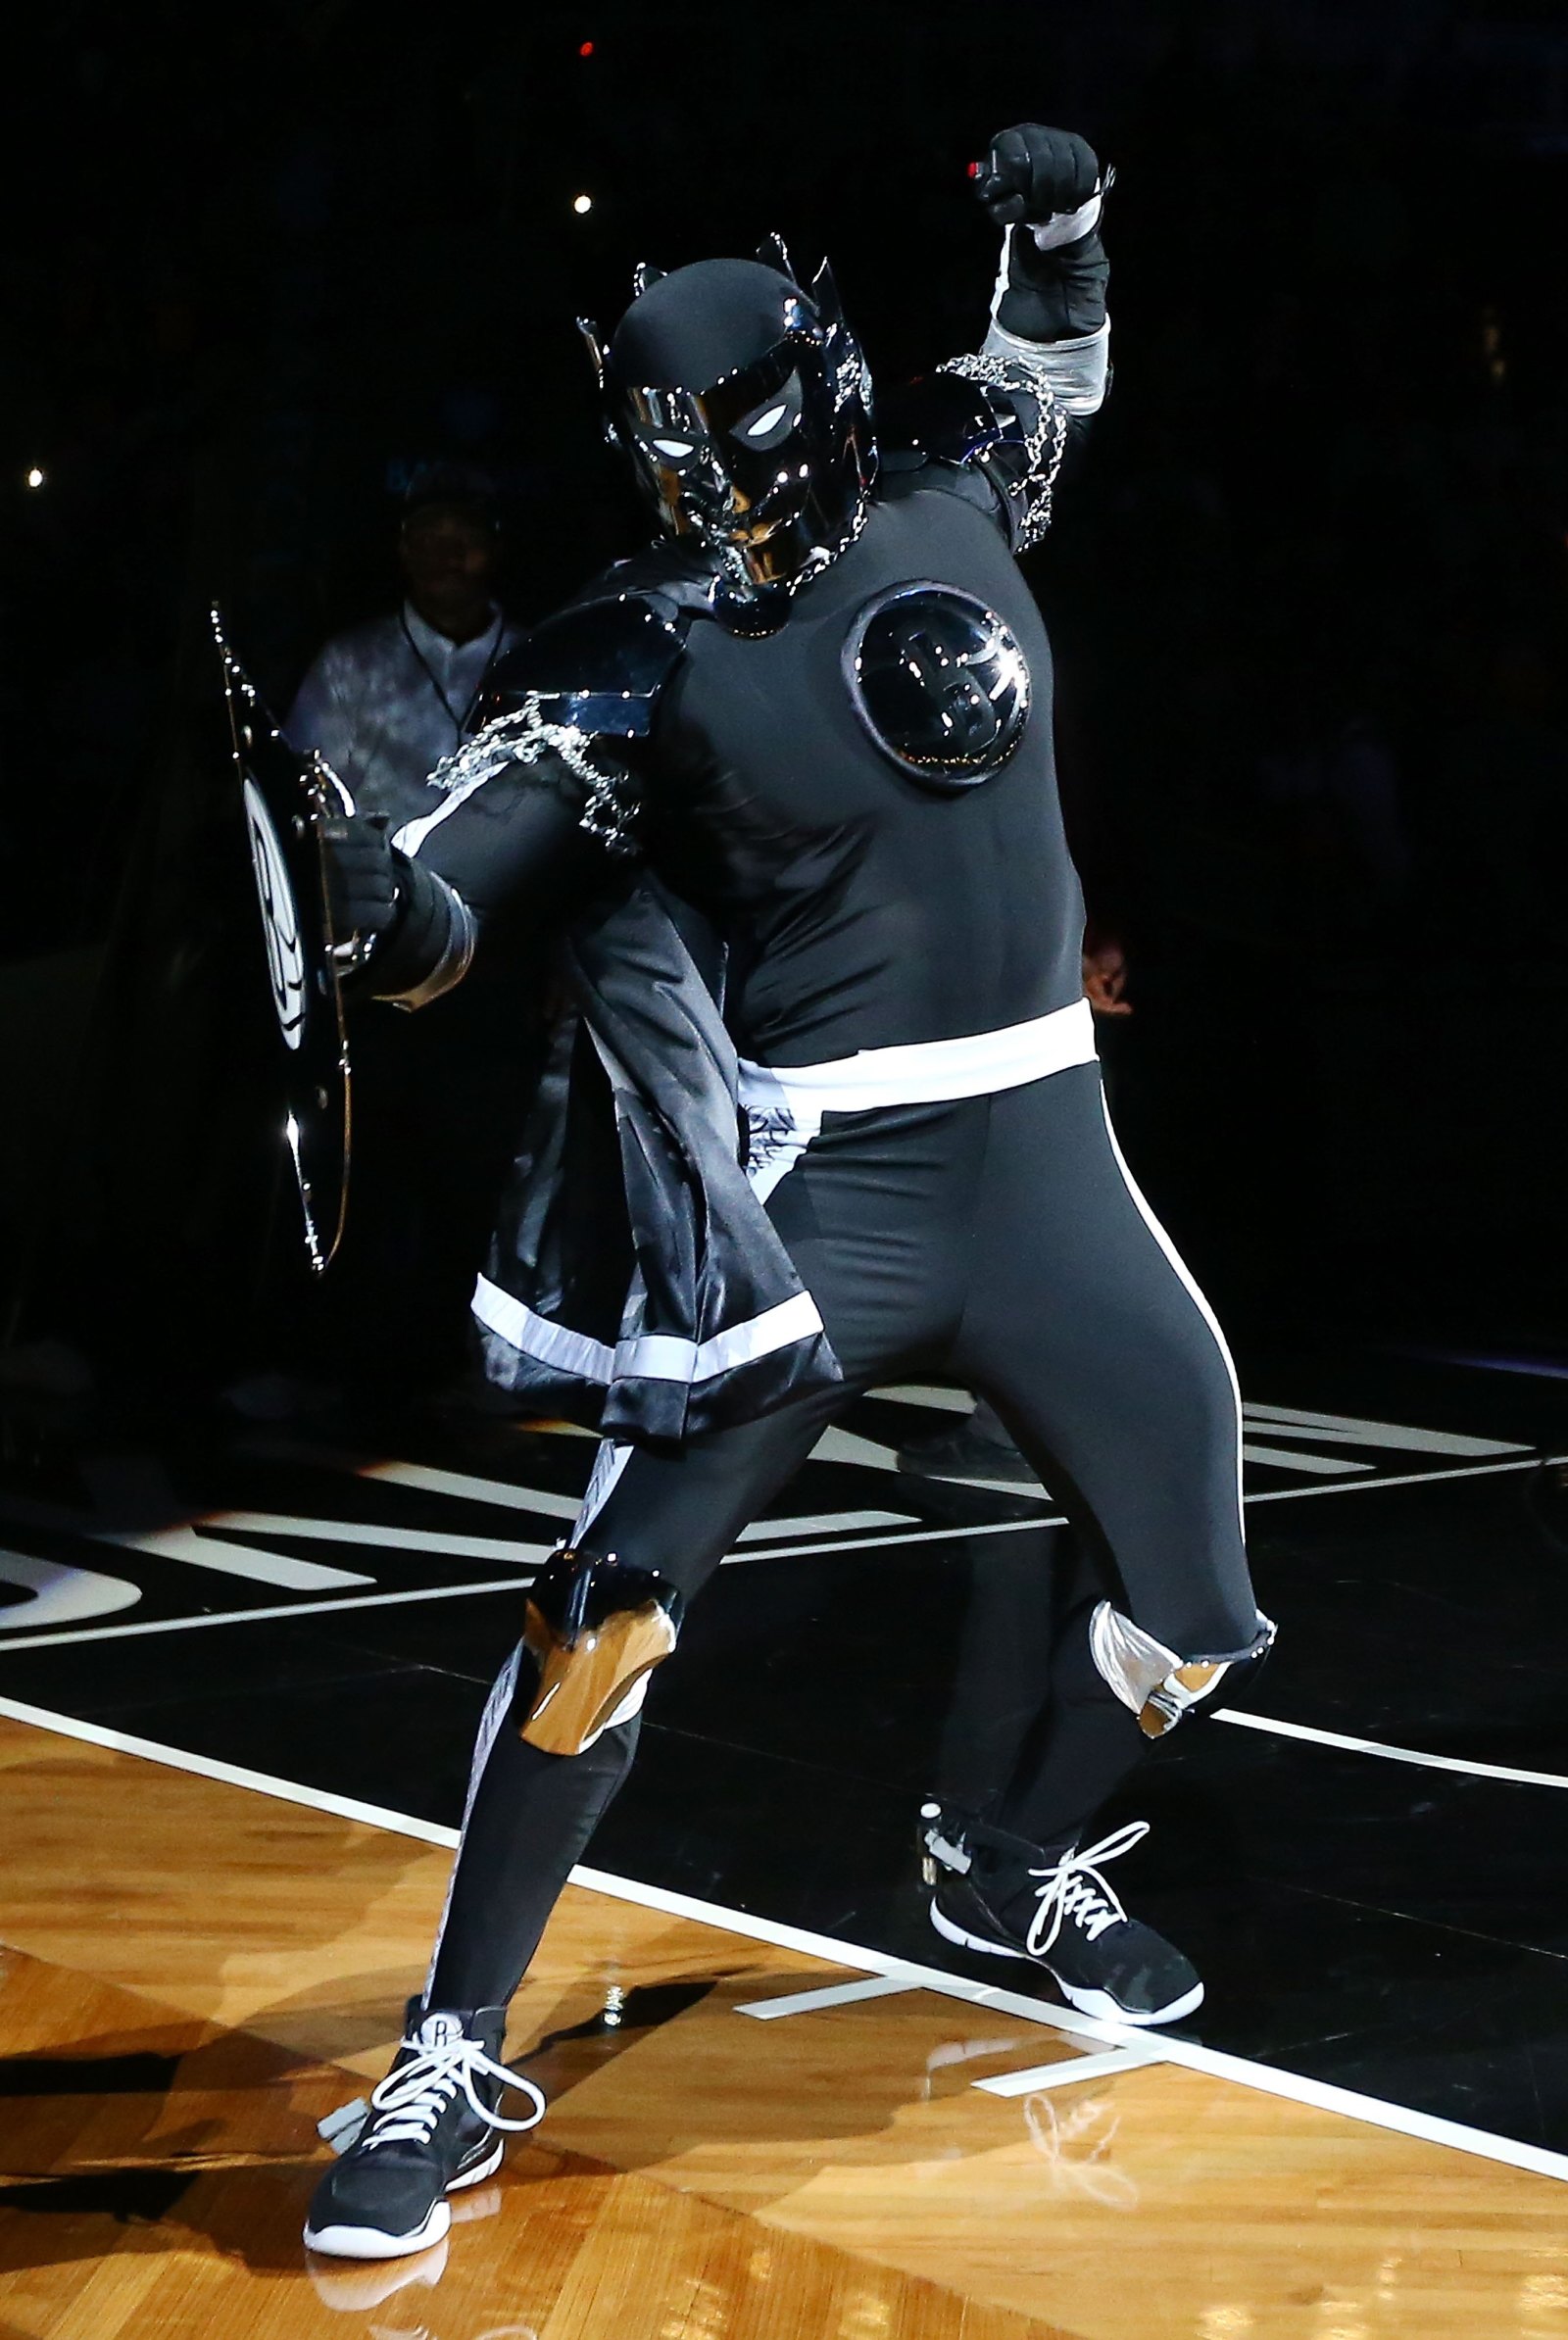 The New Brooklyn Nets Mascot Looks Familiar - The Sports Geeks